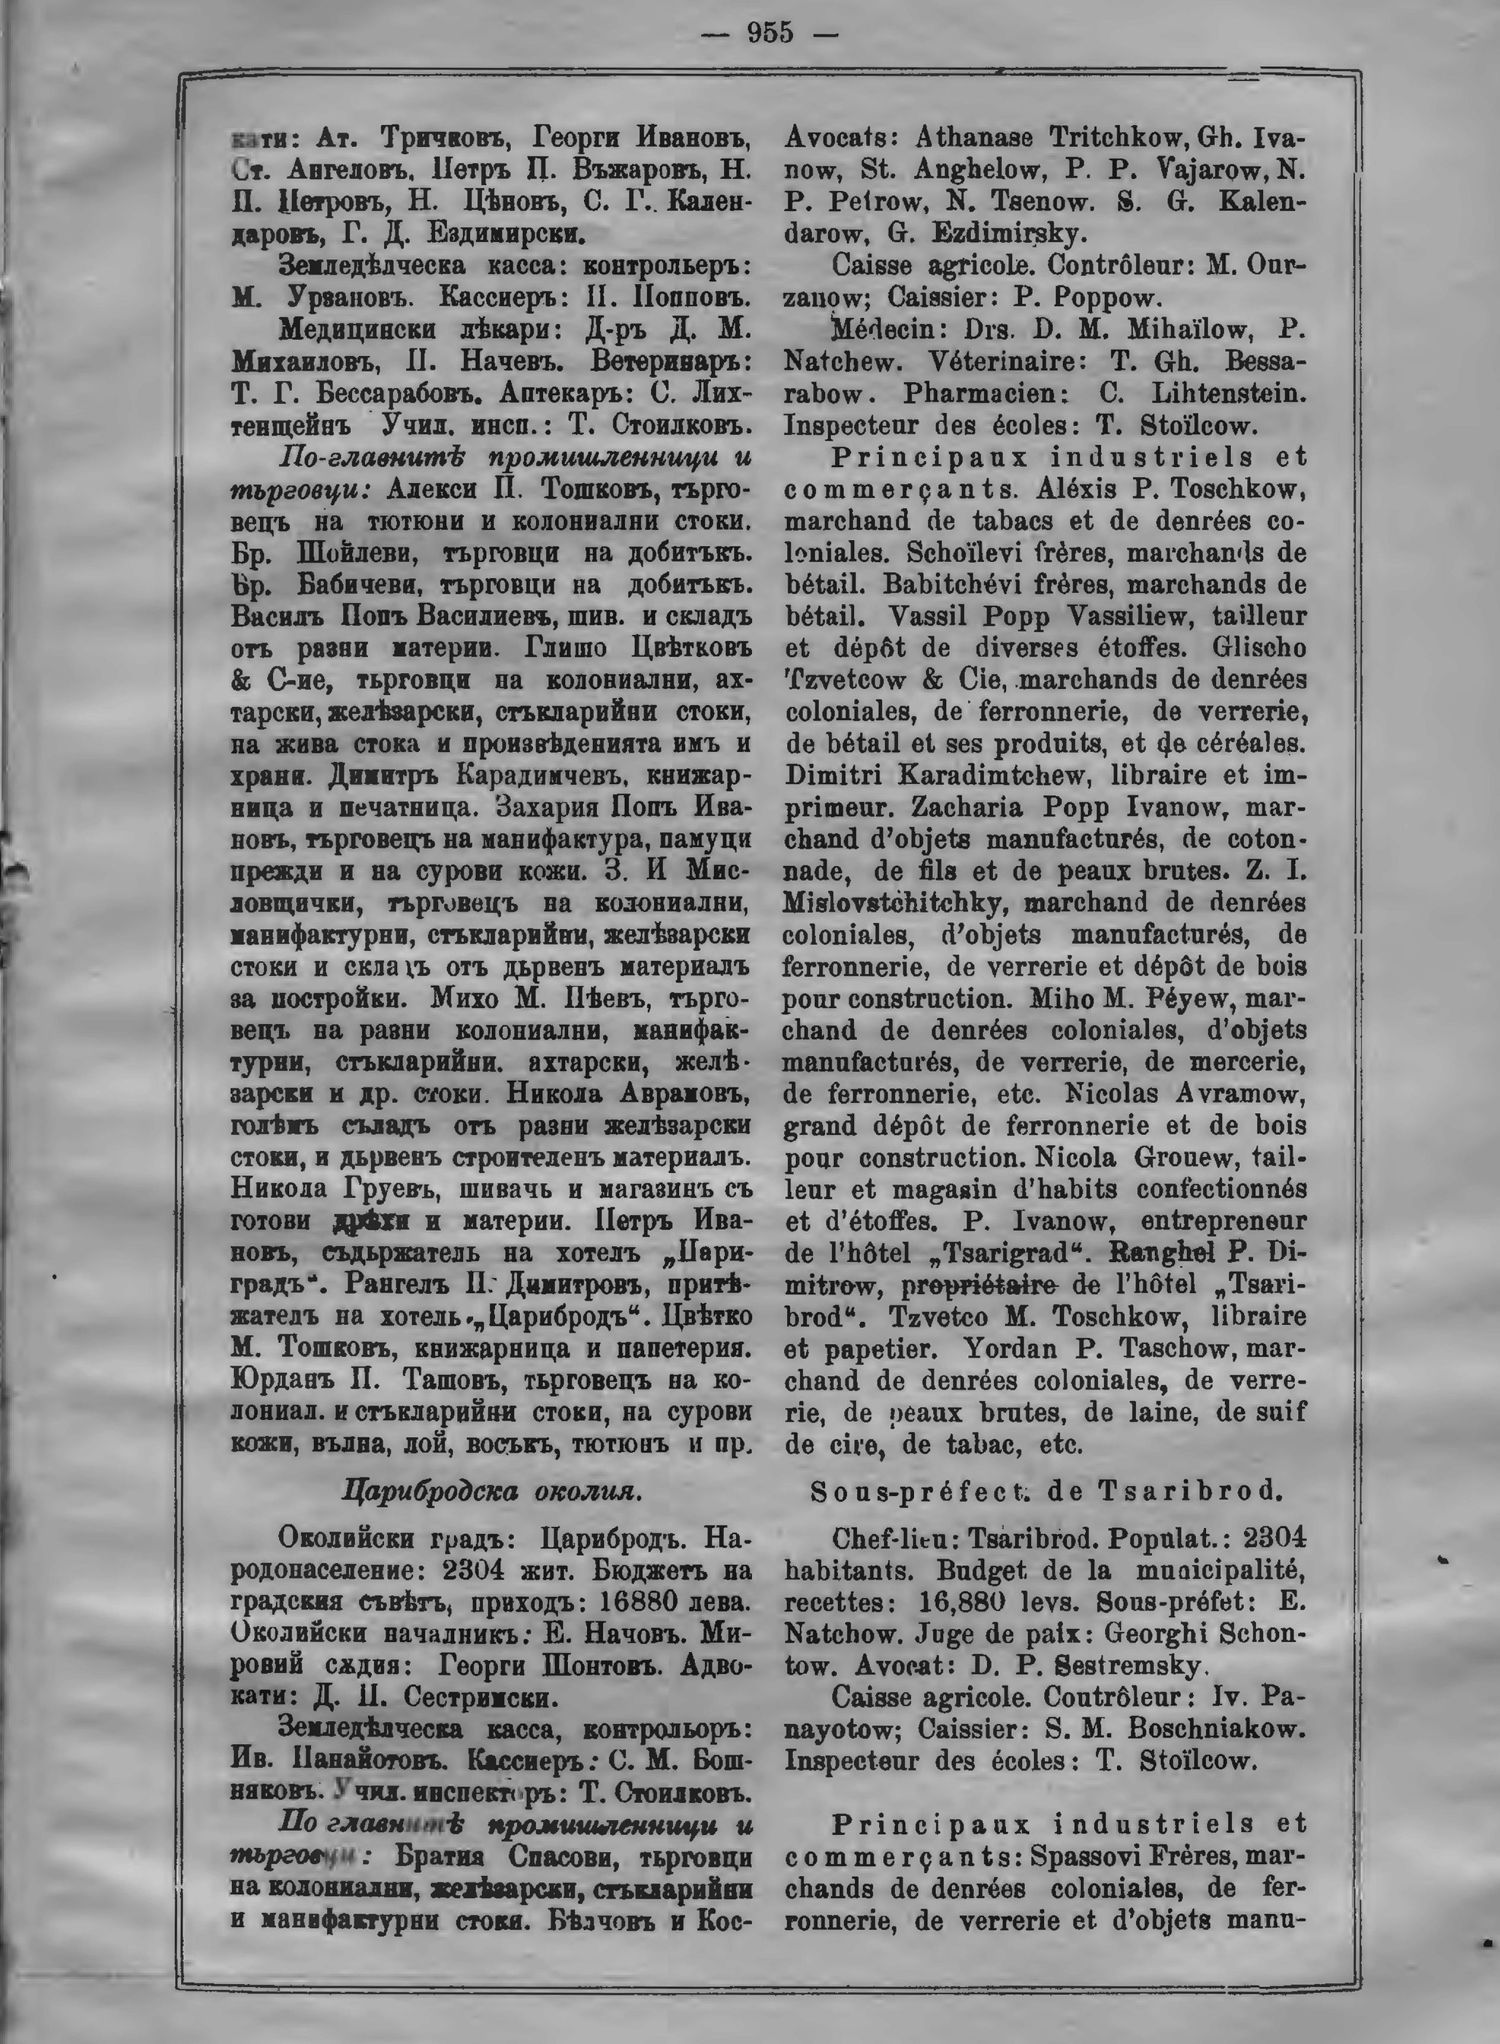 14_Almanah_1898_page_955